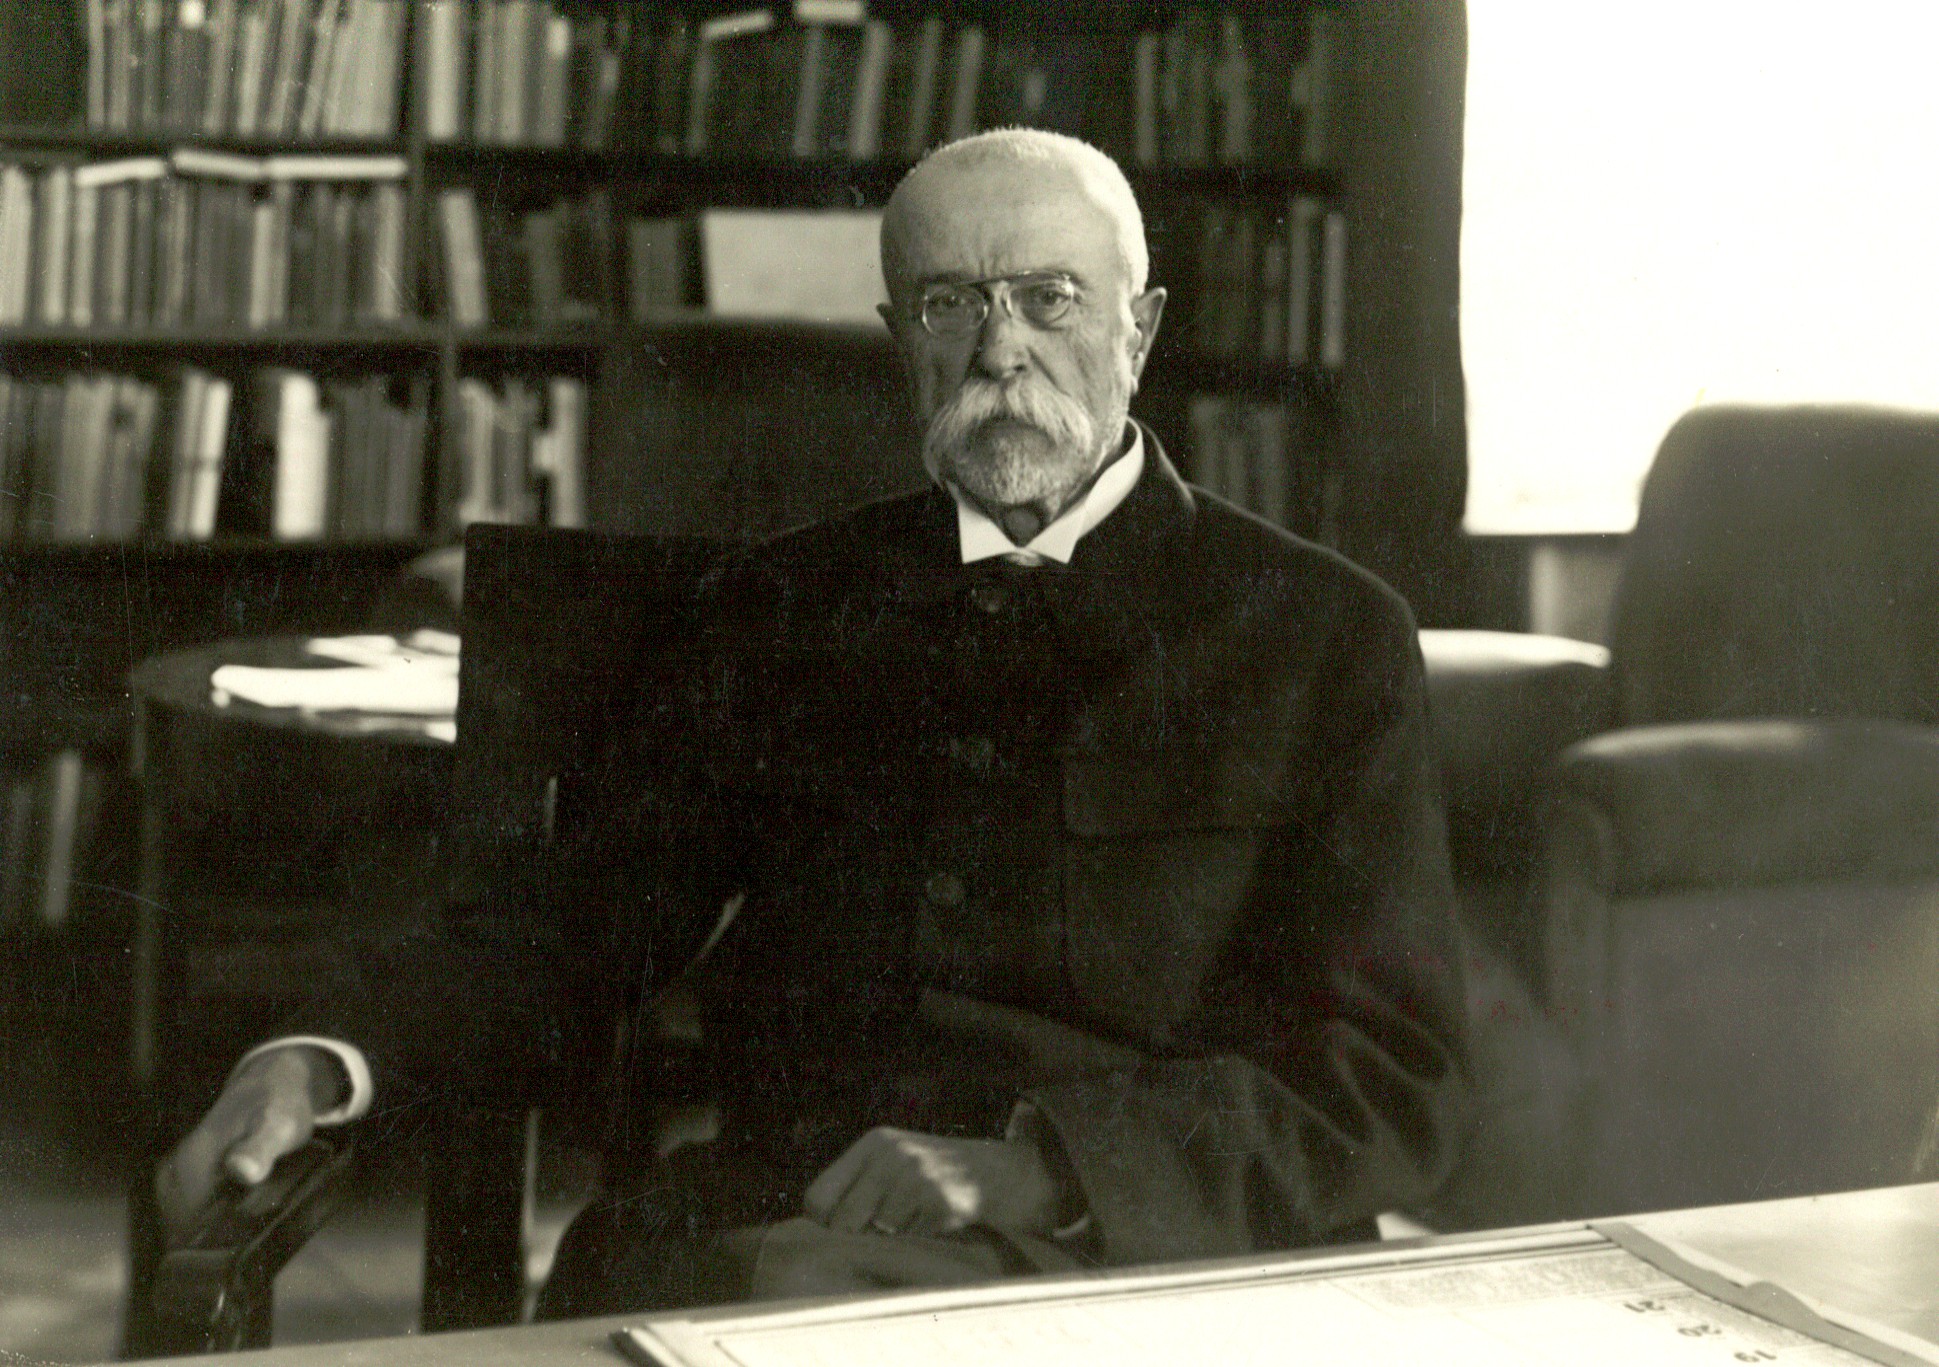 Prezident T. G. Masaryk ve své pracovně na Pražském hradě